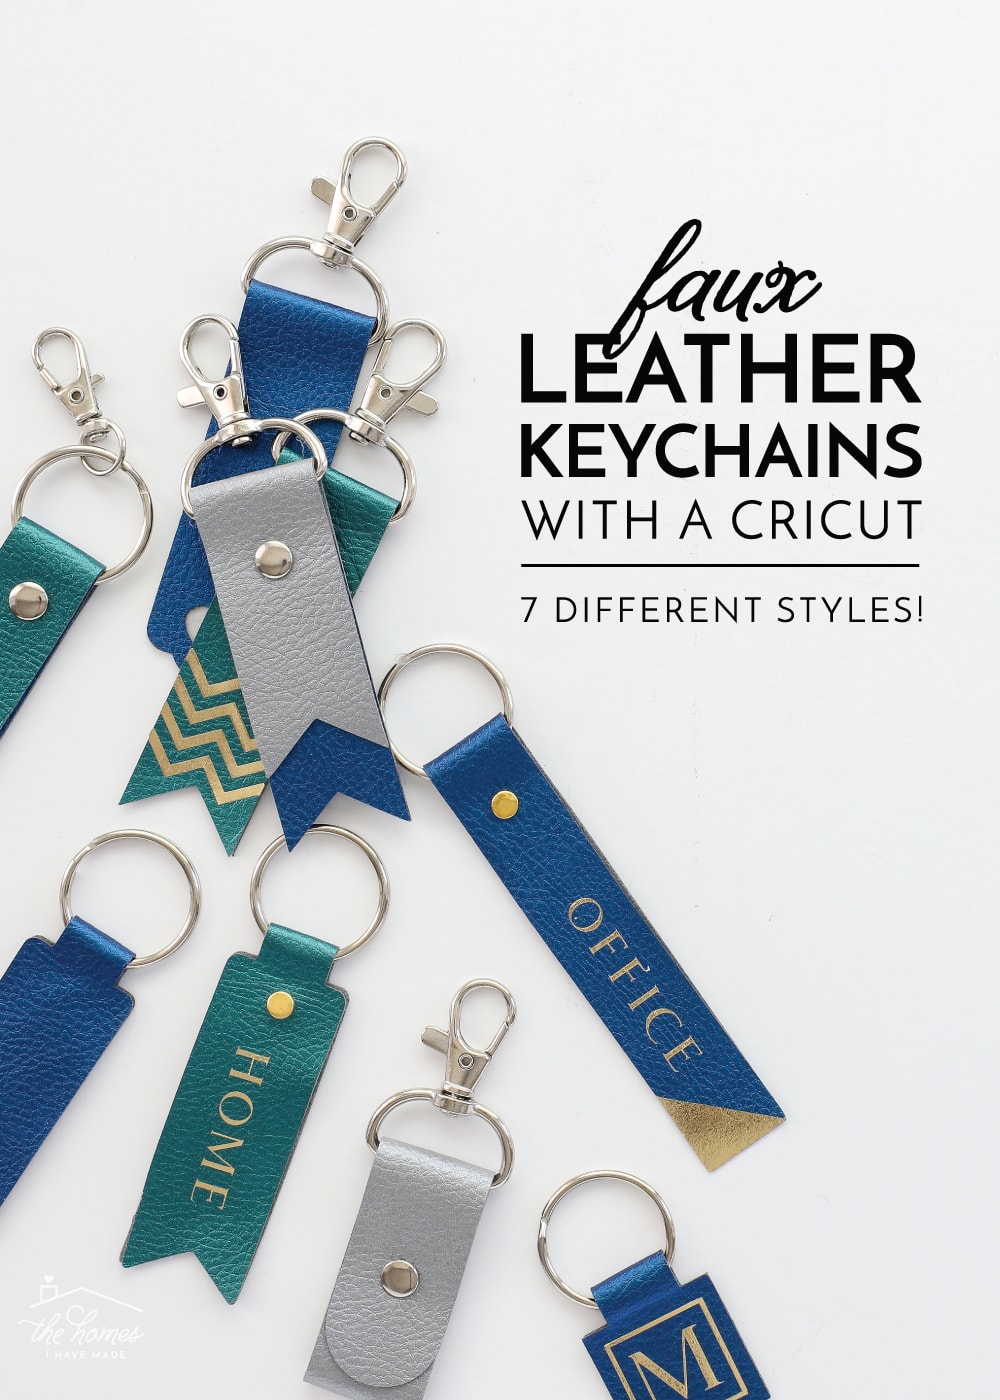 Keychains With a Cricut